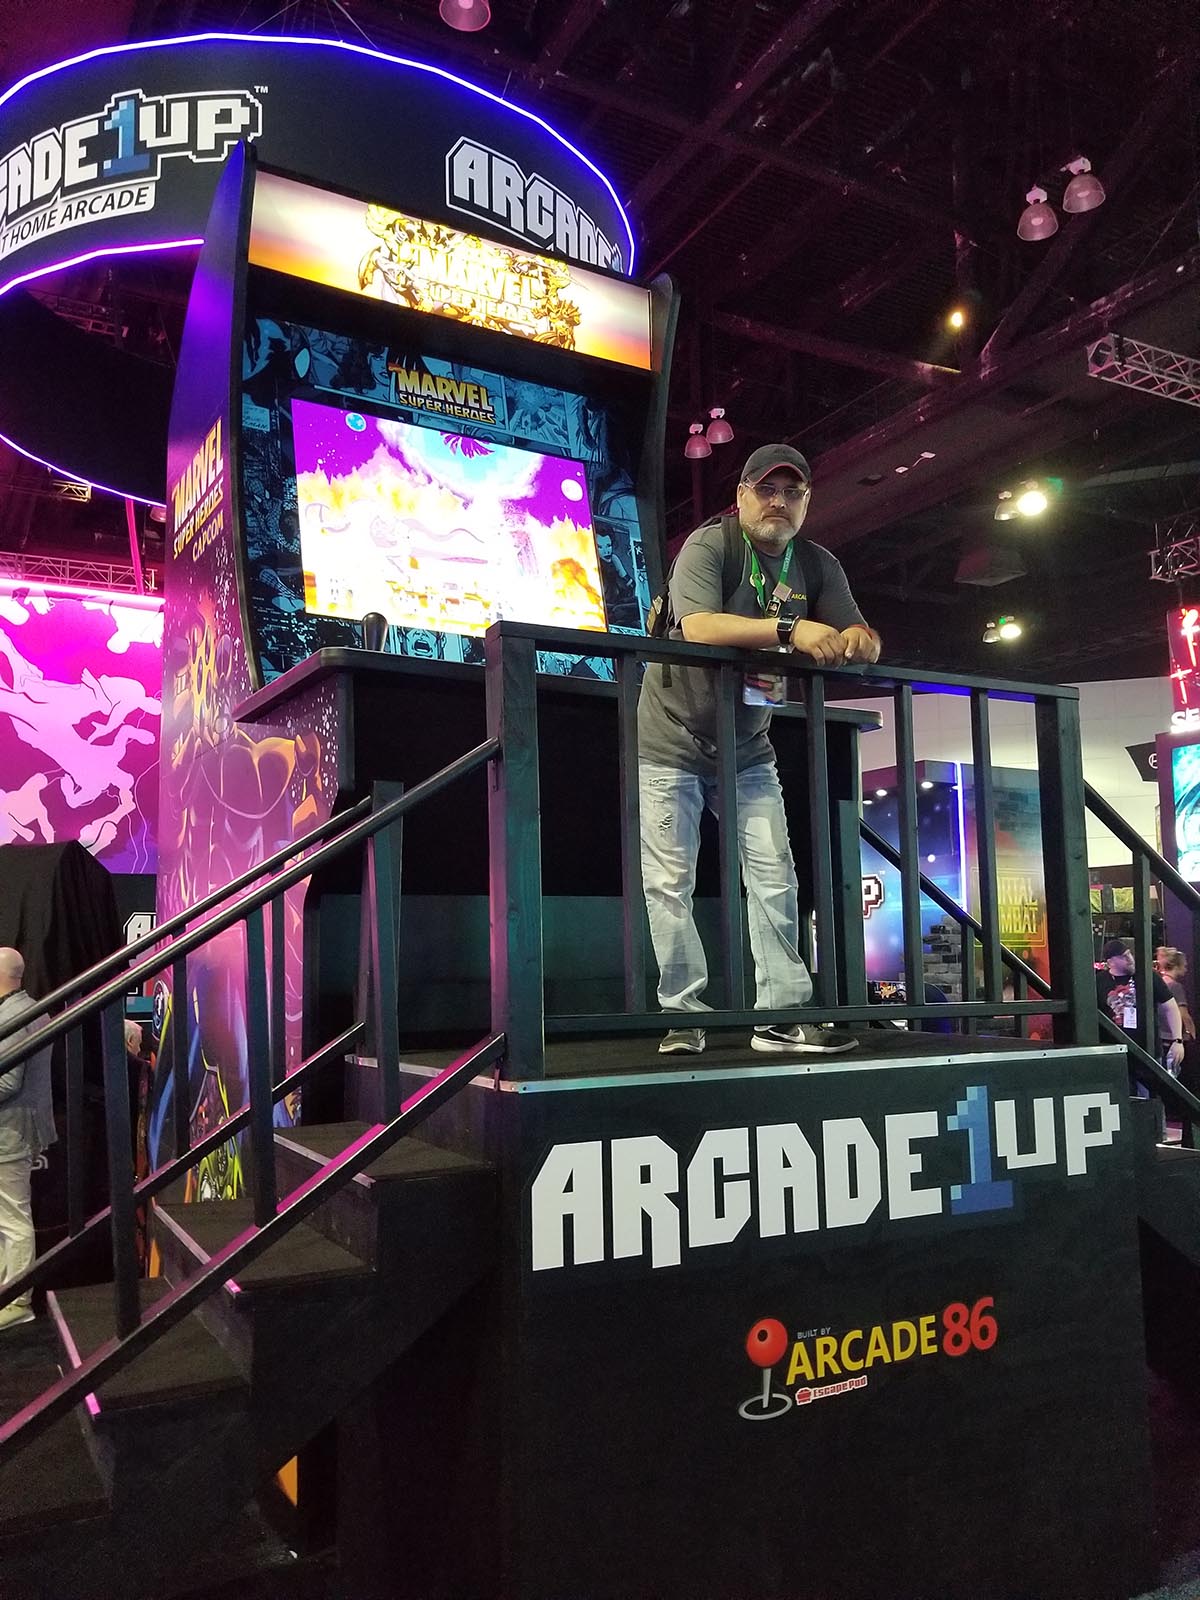 16ft Arcade for 2019 E3 Show